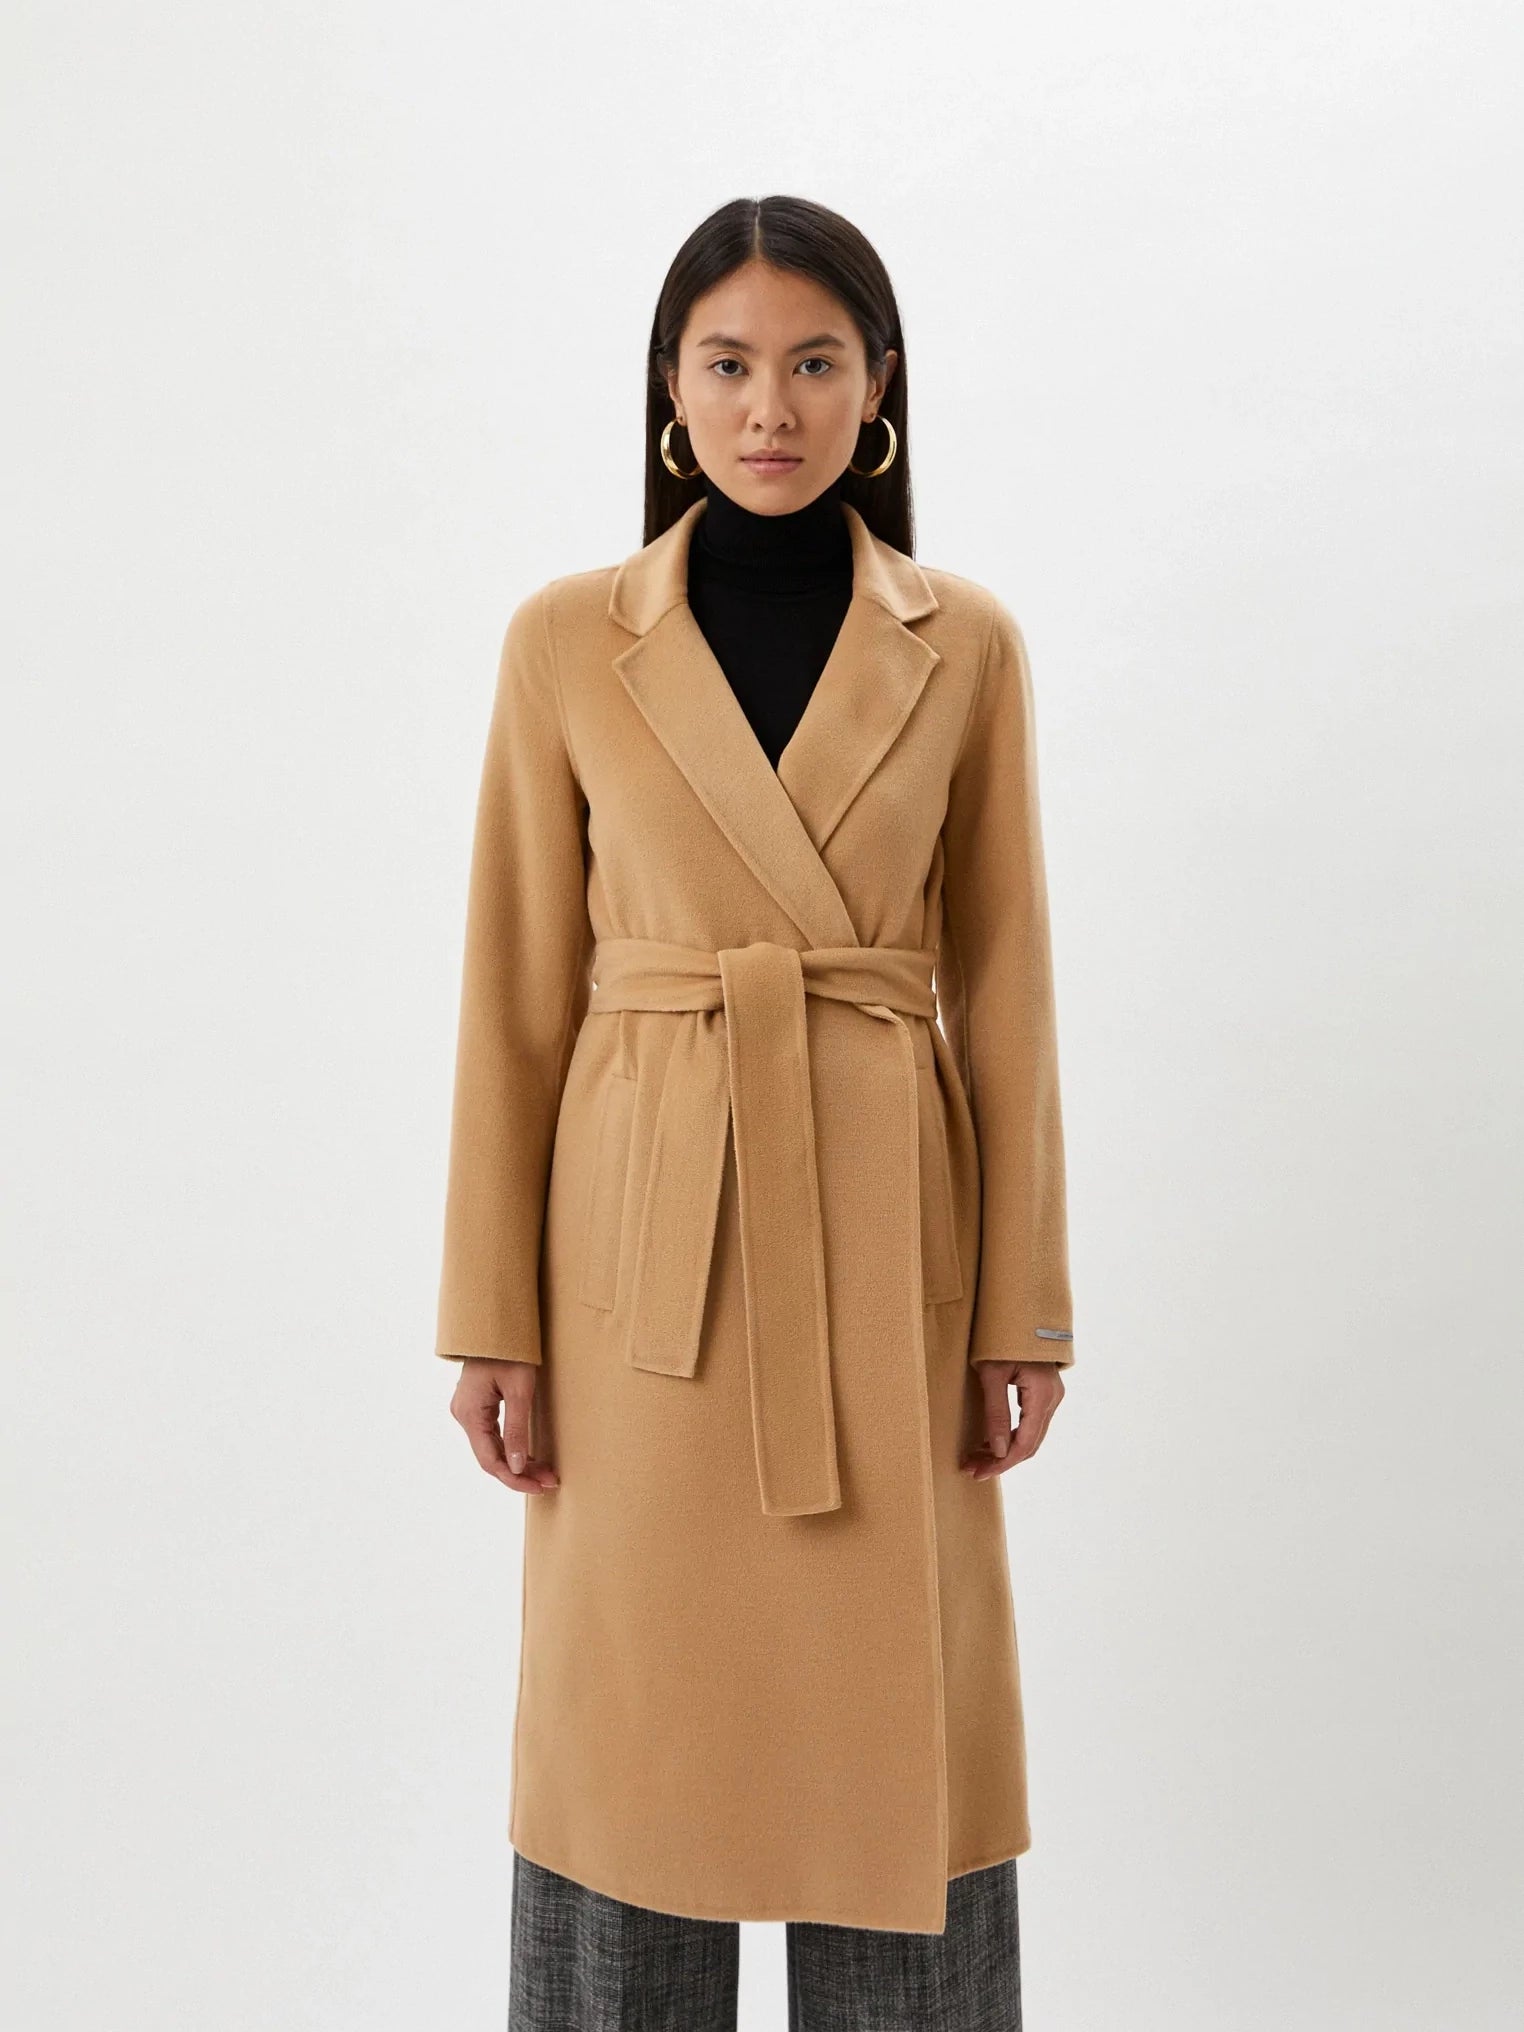 Γυναικείο παλτό με ζώνη Bacino